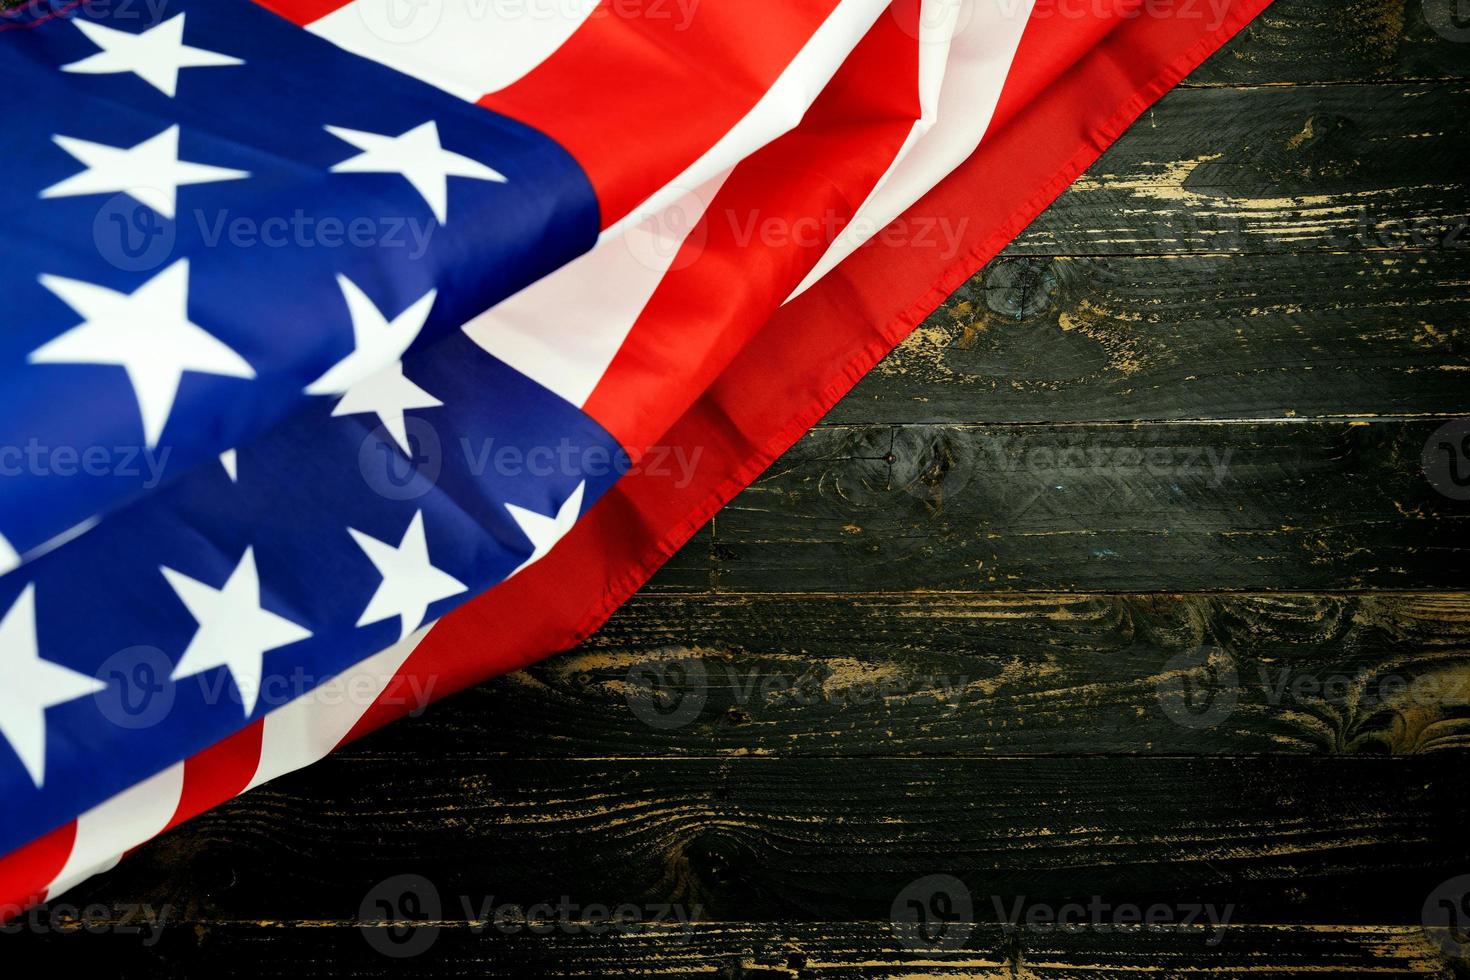 amerikanska flaggor på svart trä bakgrund, bild för 4 juli självständighetsdagen USA flagga på mörk trävägg textur bakgrund. foto